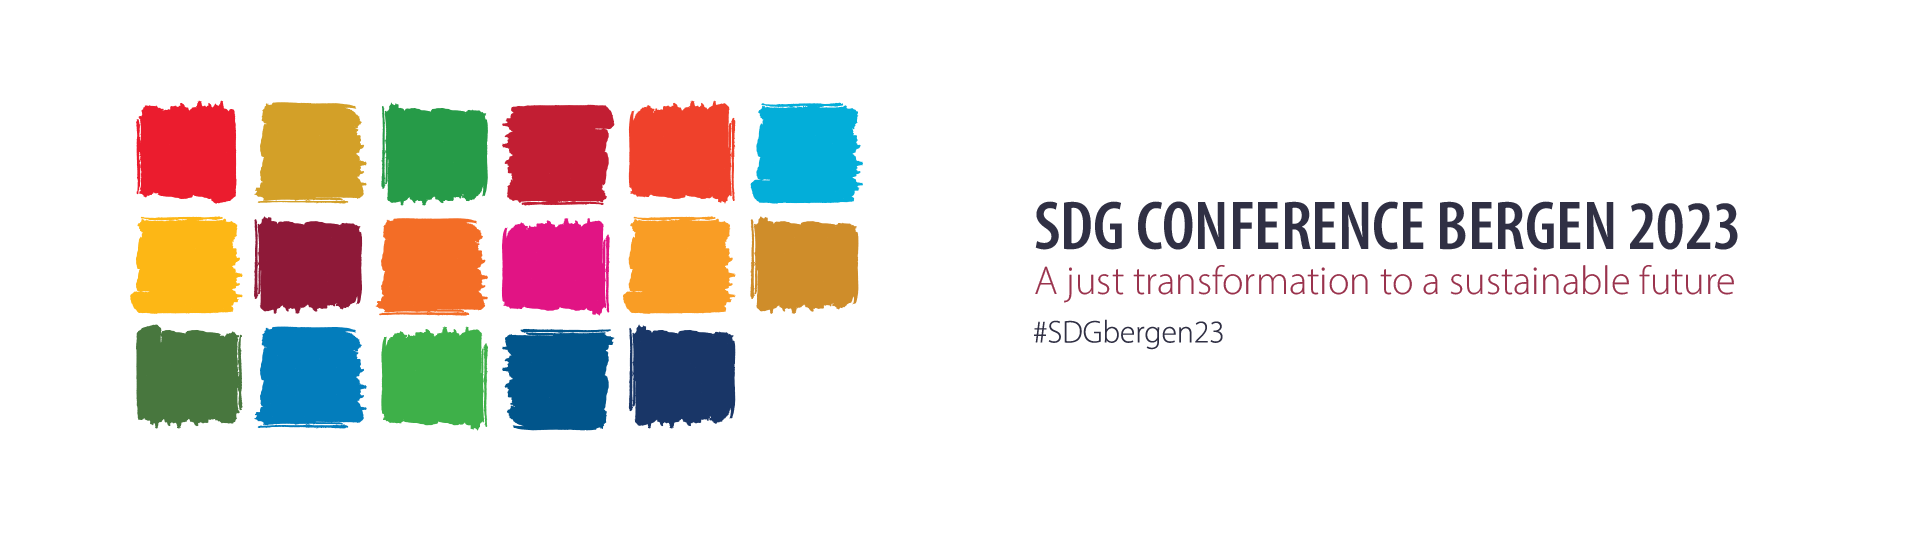 Header image for SDG Conference Bergen 2023